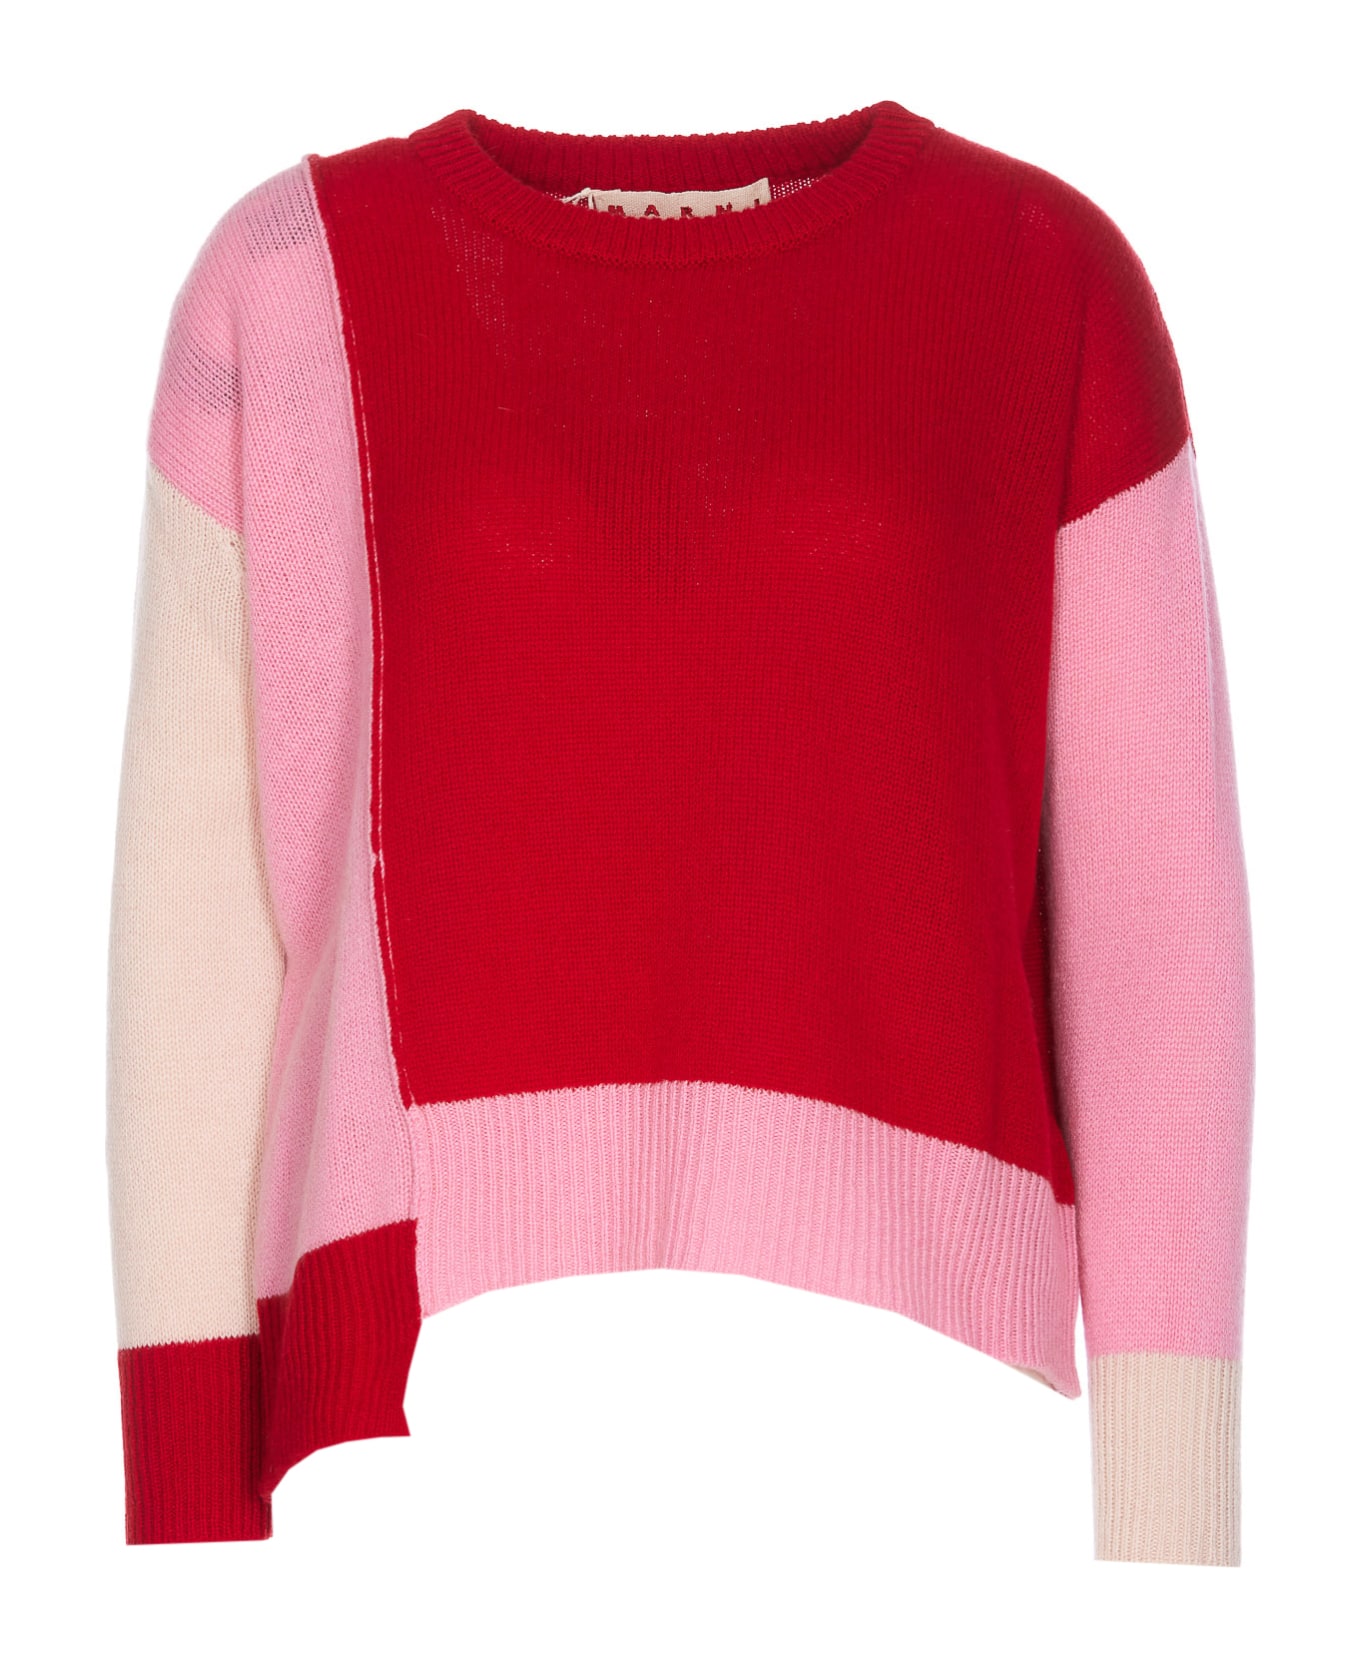 Marni Sweater - MultiColour